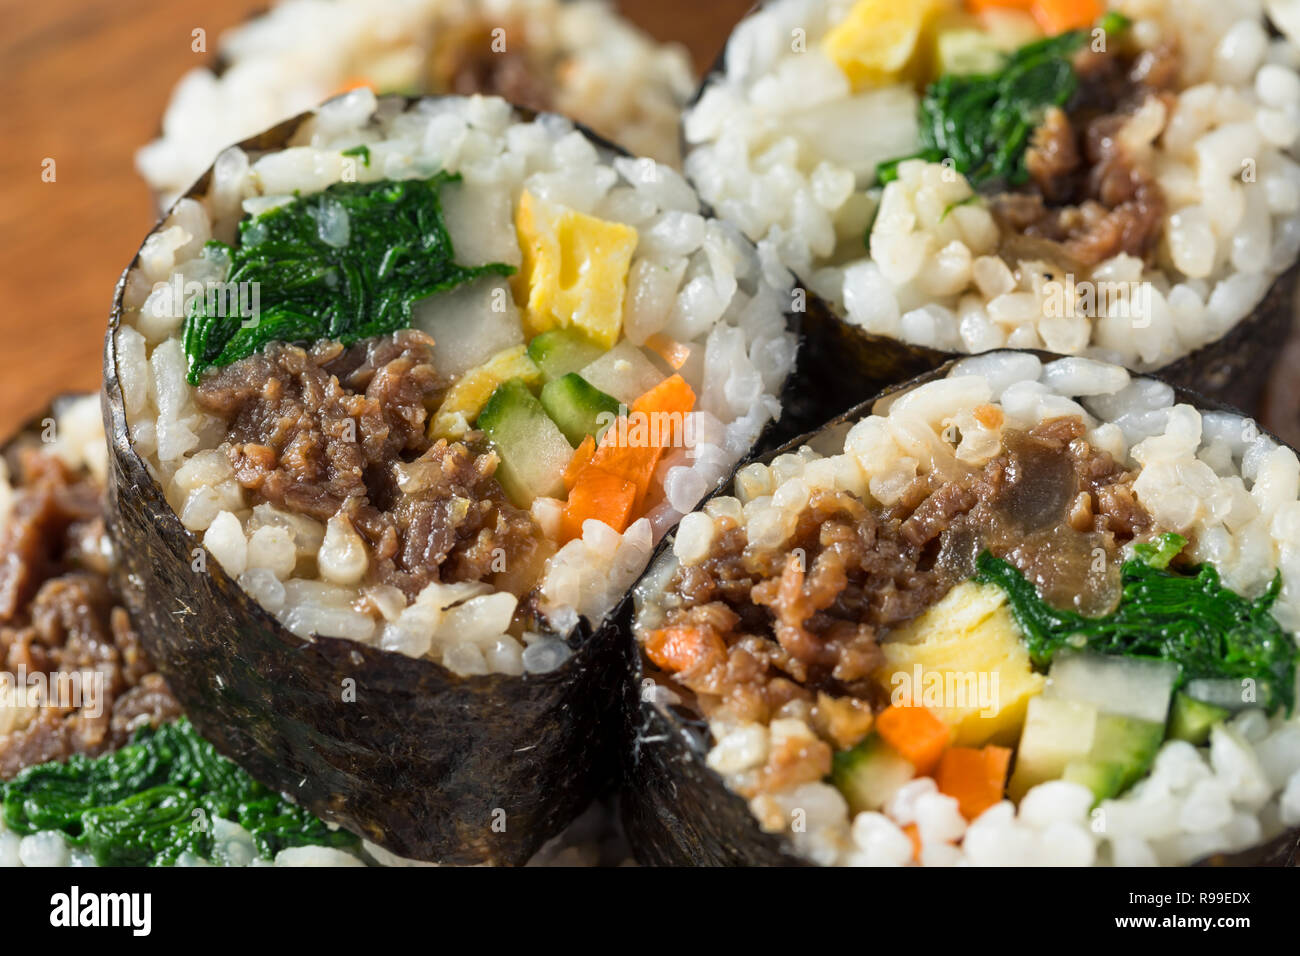 Des rouleaux de riz coréen Kimbap au boeuf et légumes Banque D'Images